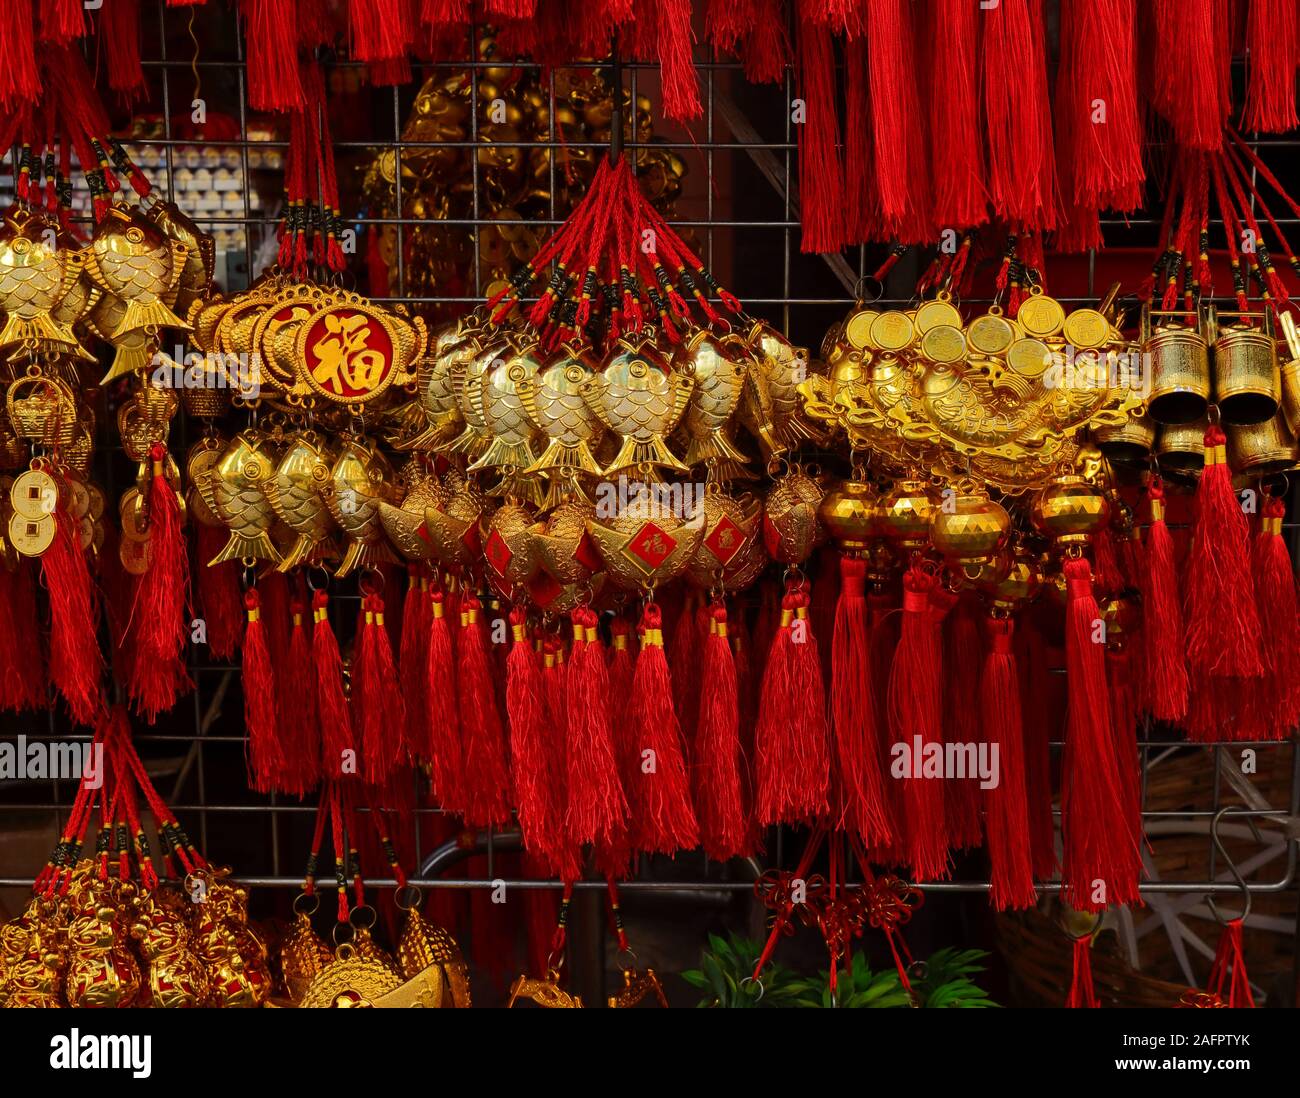 Closeup y el enfoque selectivo en el Amuleto de pescado estilo chino, el idioma chino se ve en la imagen son saludos y mejores deseos de riqueza media Foto de stock